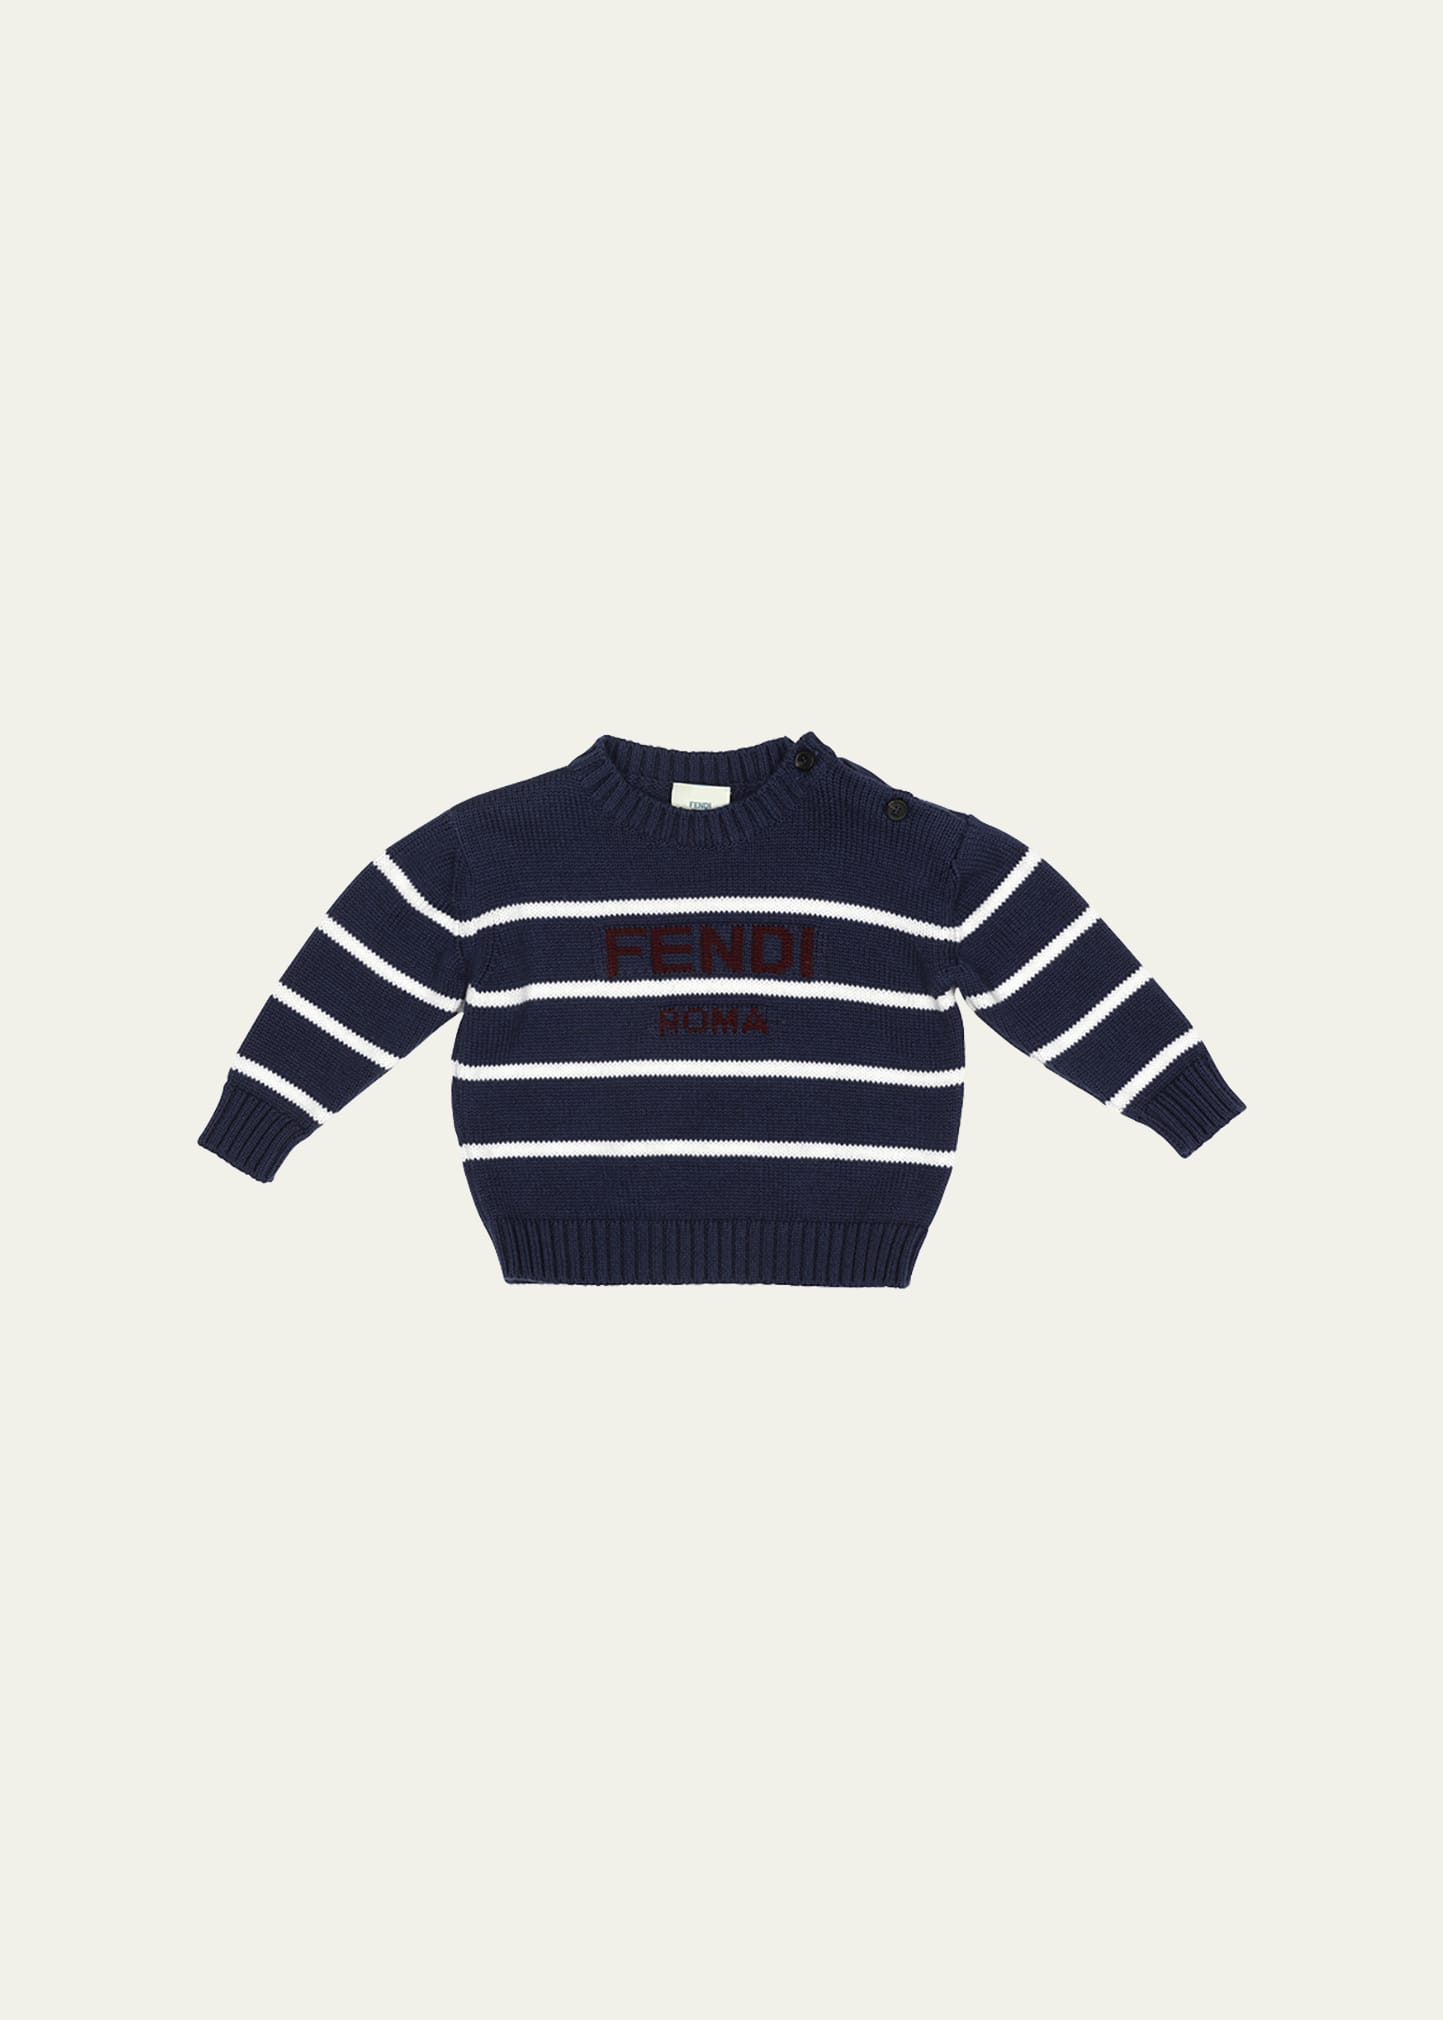 Fendi Kids' Boy's Striped Knit Logo Sweater In F1i11 Navy